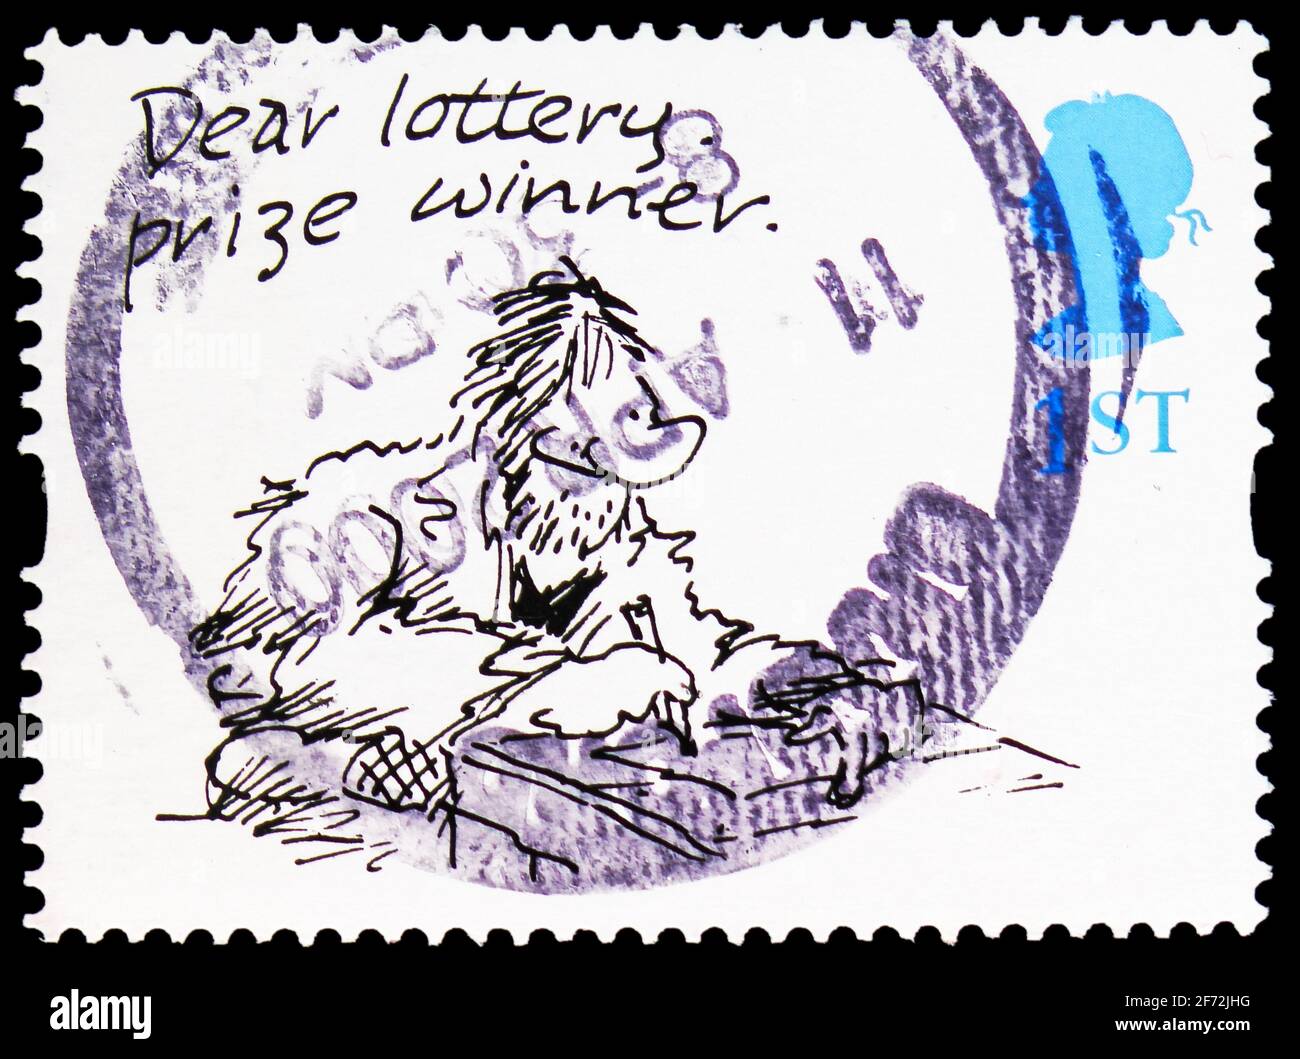 MOSCOU, RUSSIE - 22 DÉCEMBRE 2020 : le timbre-poste imprimé au Royaume-Uni montre le « gagnant du prix de loterie de la main » (Larry), Greetings Timbres 1996 - Cartoon Banque D'Images